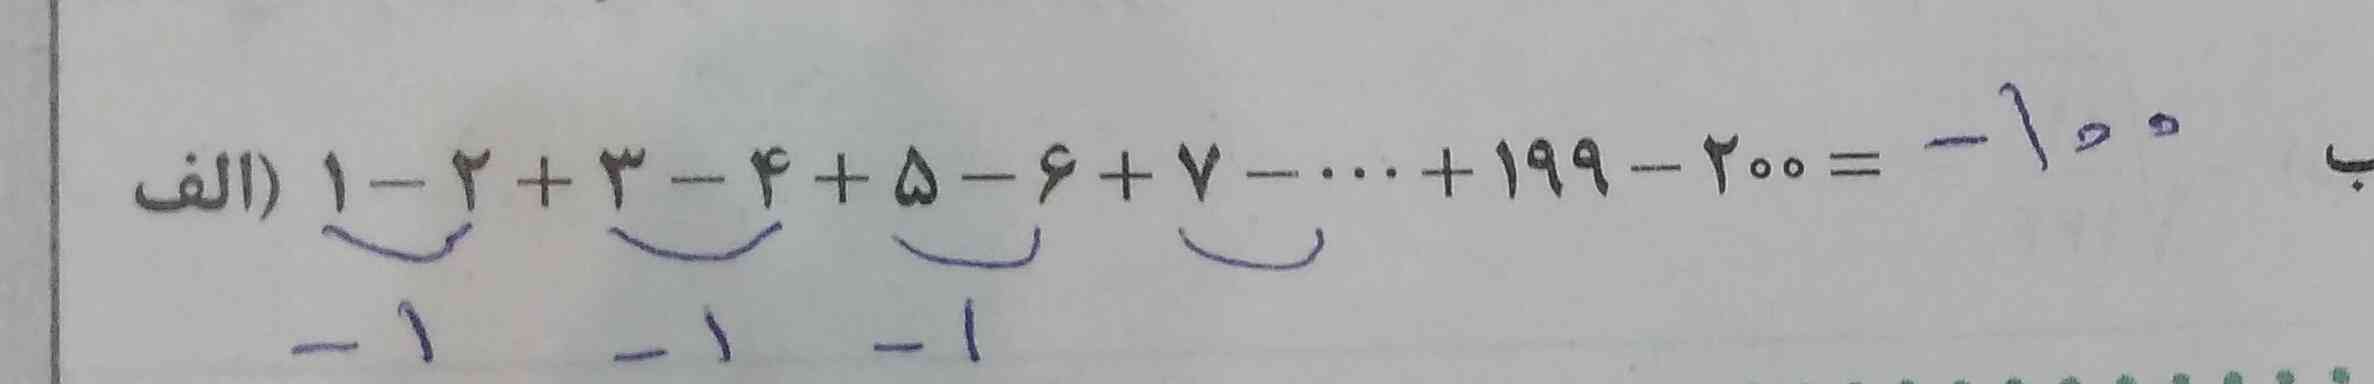 سلام لطفا بگین که این مسئله فرمول خاصی داره یا نه؟
و اگه فرمول نداشت از چه روشی جواب رو بدست بیاریم تاج میدم زود بگین